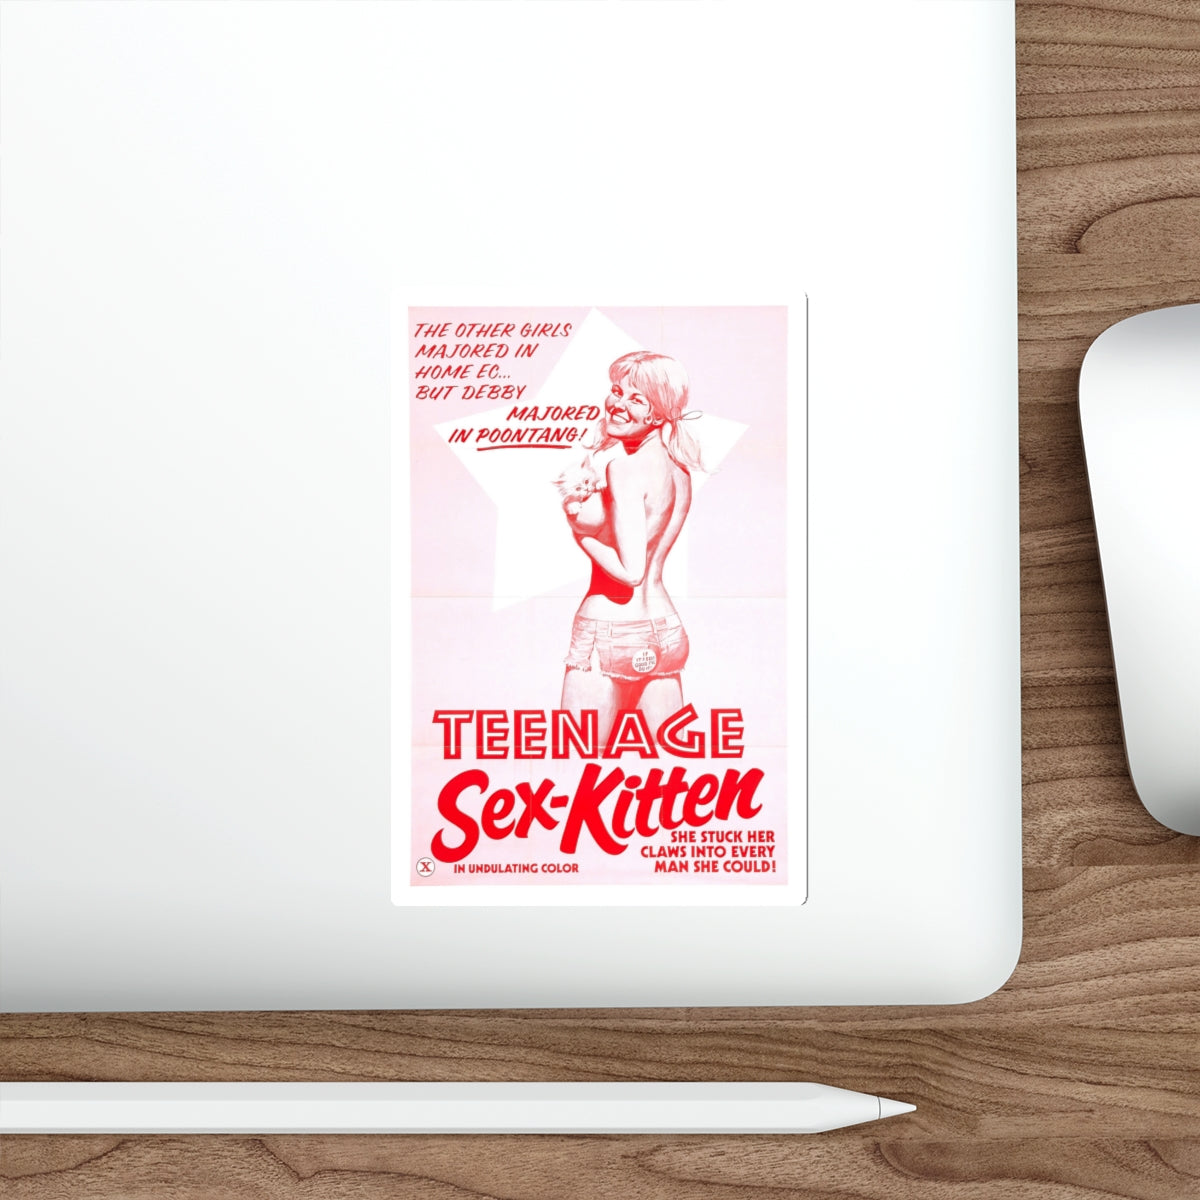 TEENAGE SEX-KITTEN 1975 Movie Poster STICKER Vinyl Die-Cut Decal-The Sticker Space